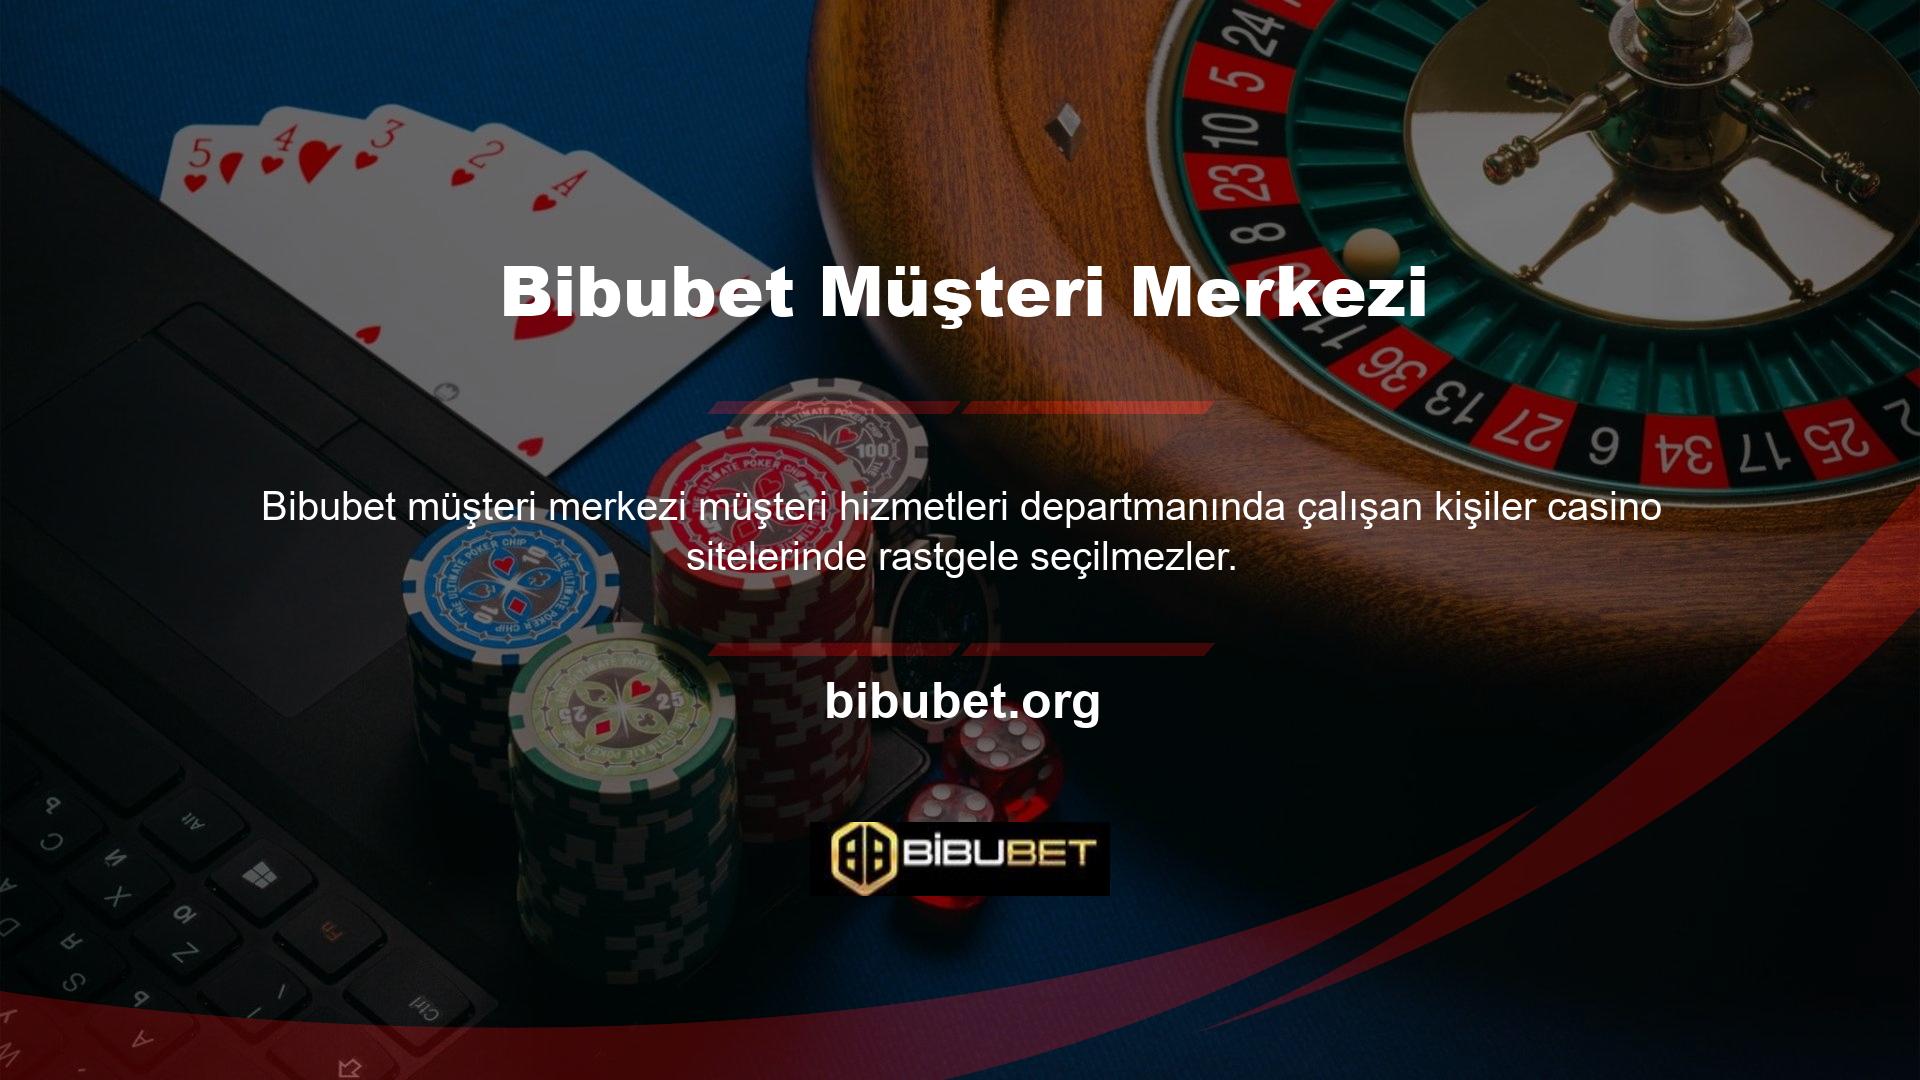 Casino web sitesi, bahisçilere mümkün olan en iyi hizmeti sağlamak için profesyonel acentelerin hizmetlerini sunar